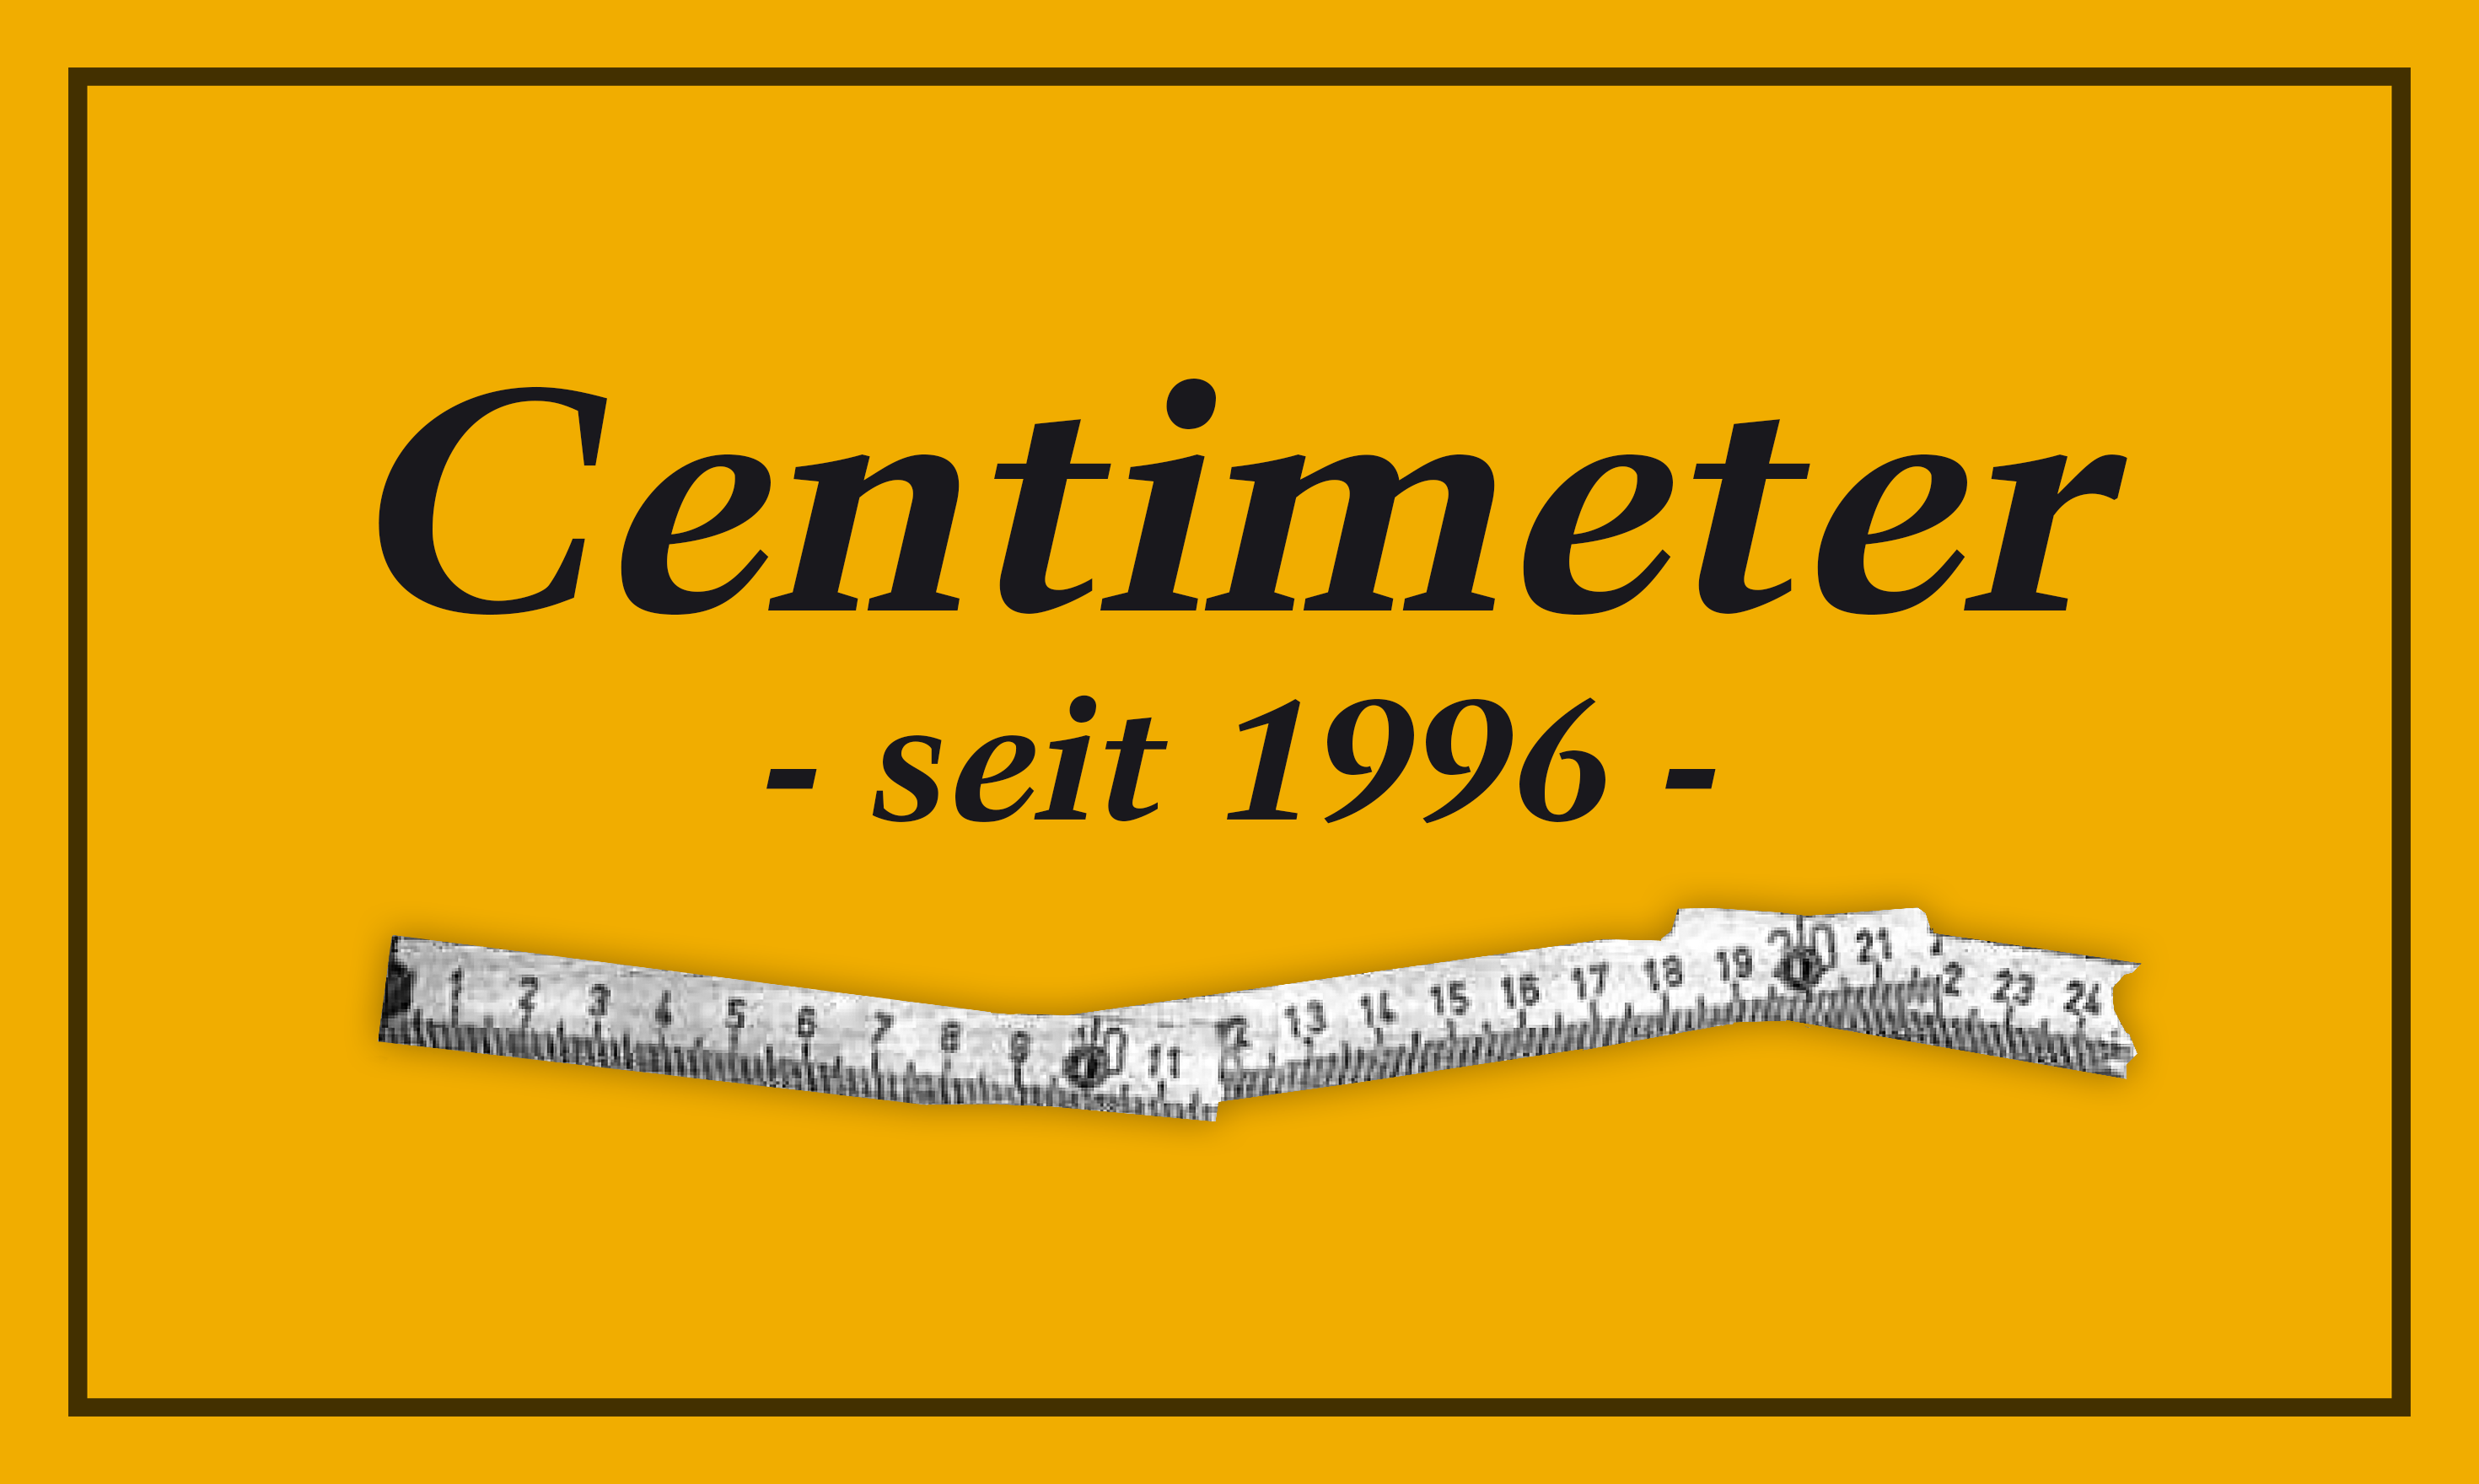 Centimeter Logo